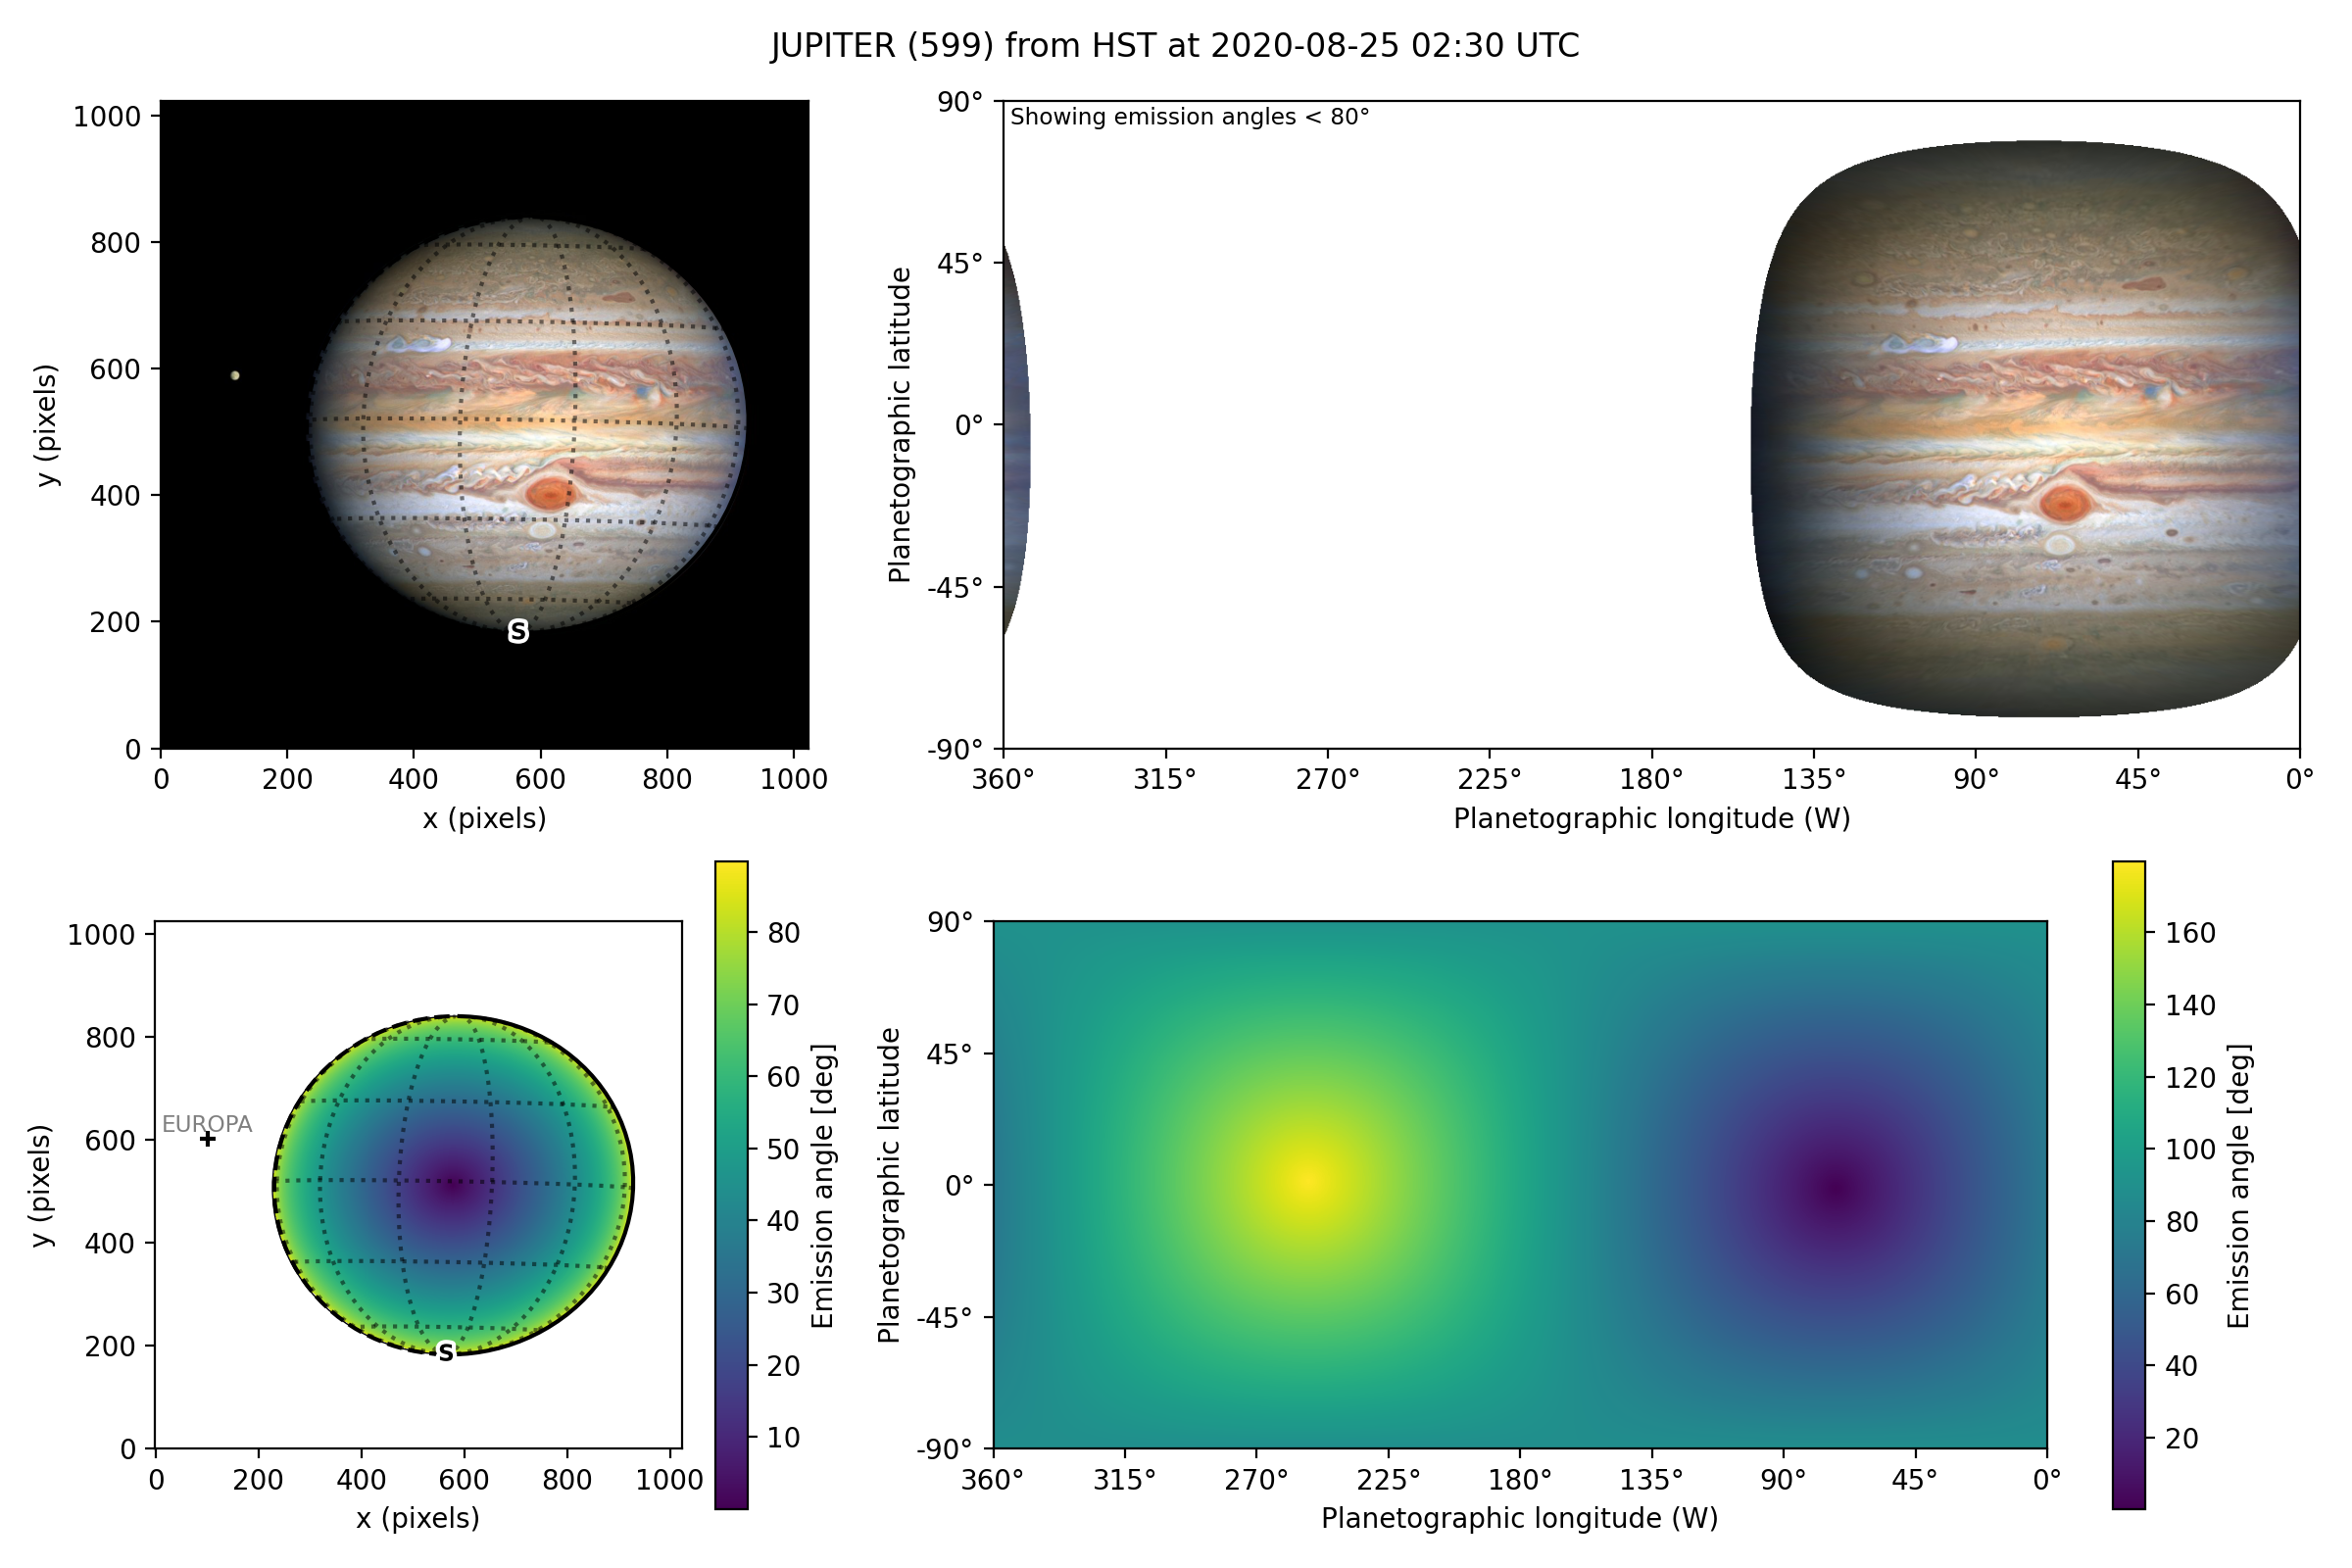 Plot of a mapped Jupiter observation